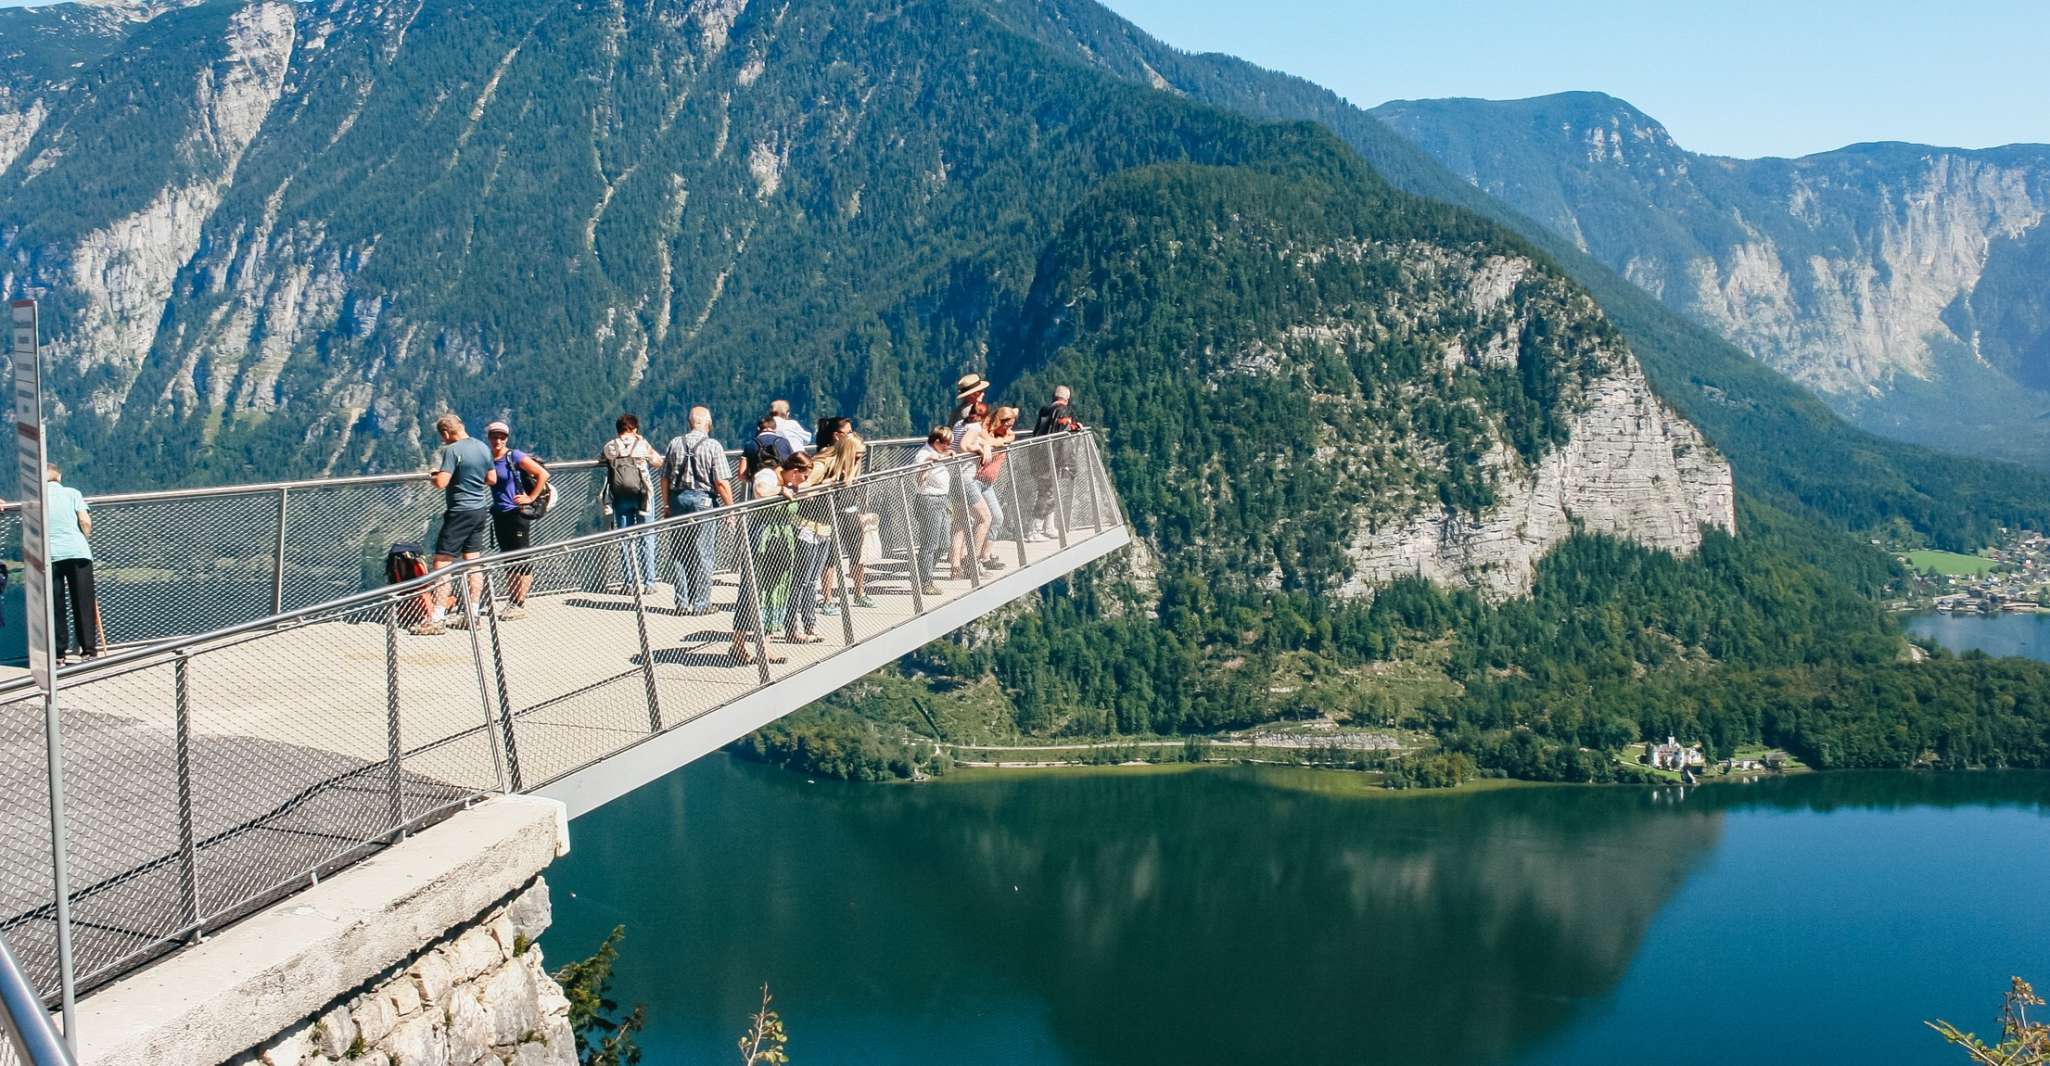 Vienna, Hallstatt & Alpine Peaks Day Trip with Skywalk Lift - Housity